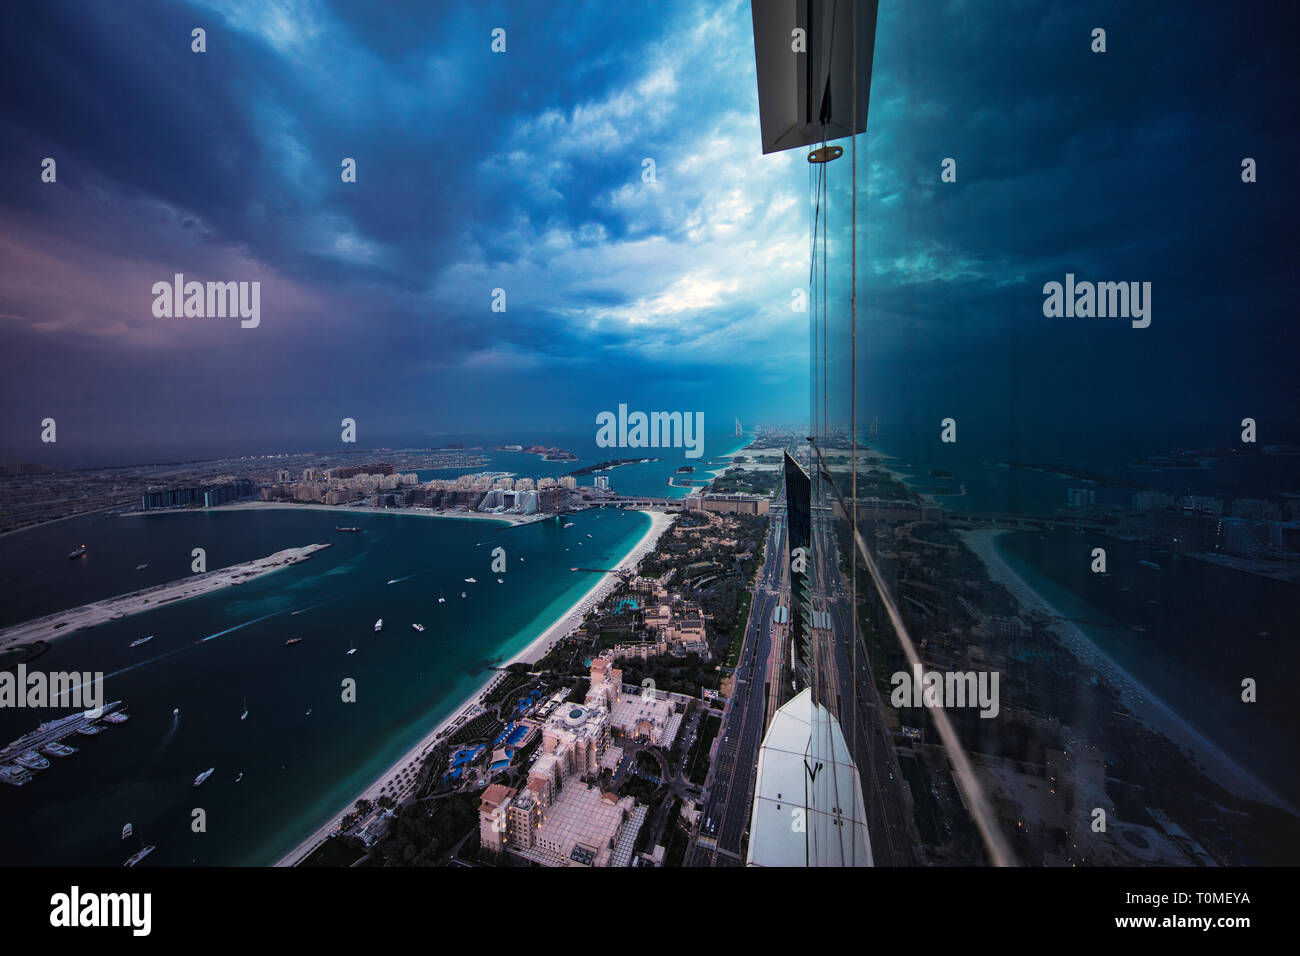 A reflection of Dubai Marina, Dubai, UAE Stock Photo